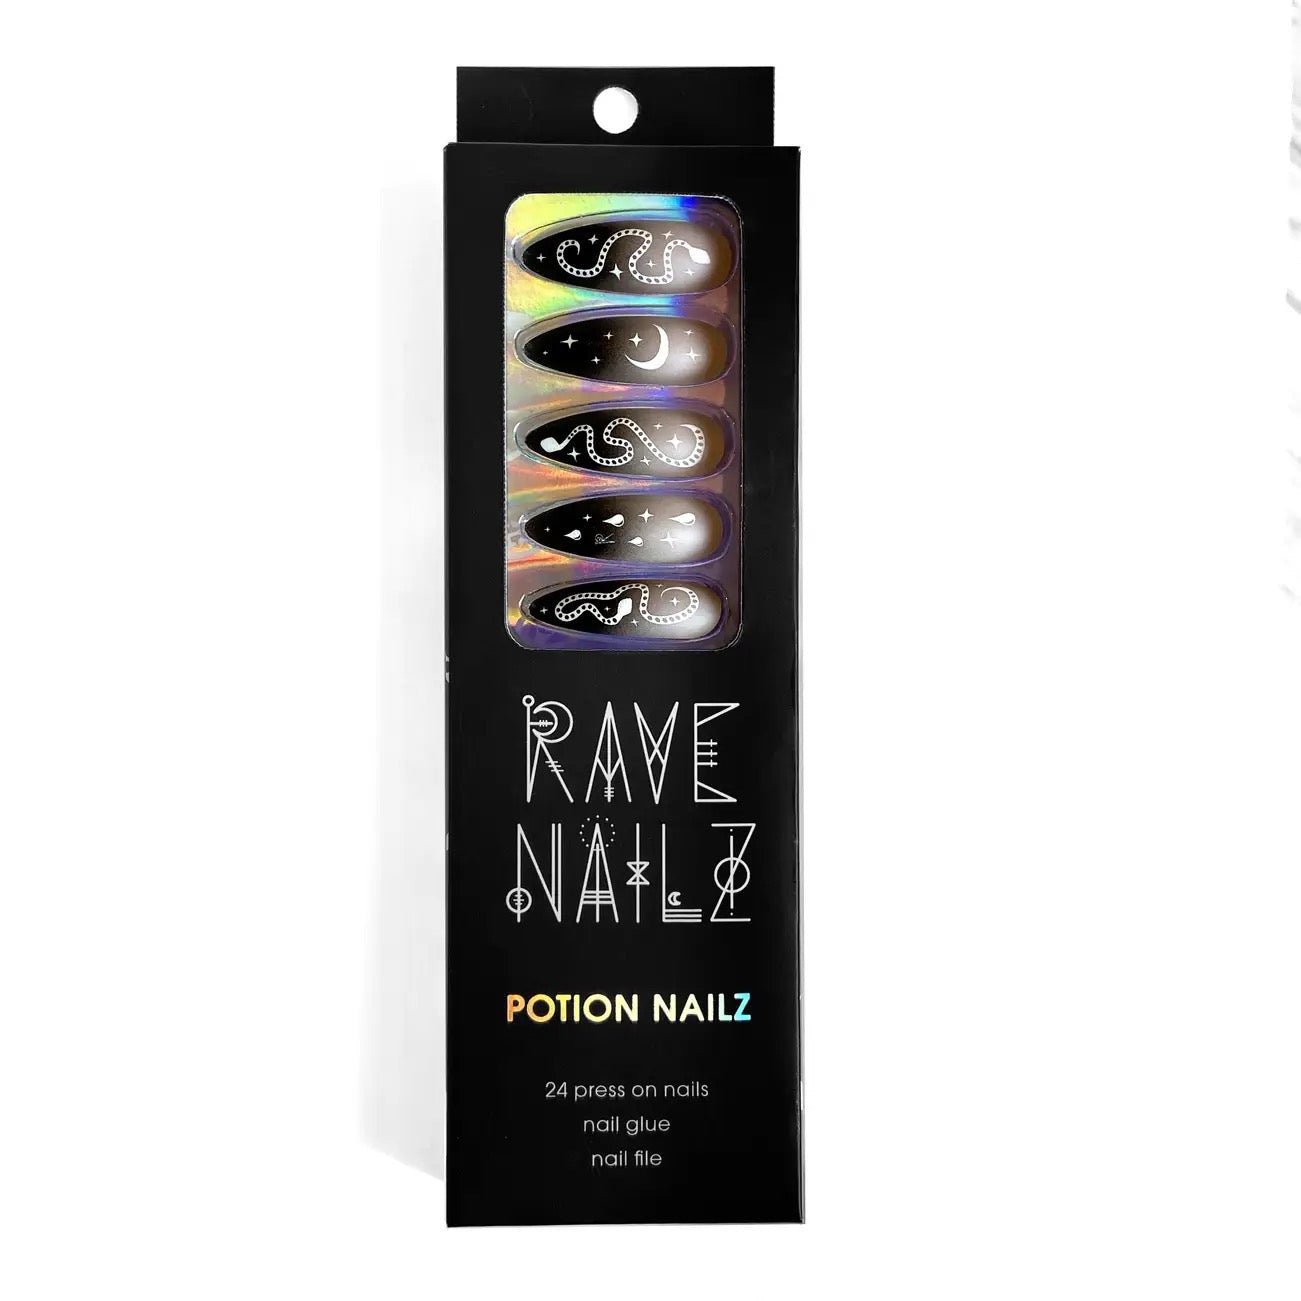 Potion Nailz | Press On Nail Kit Includes 24 Nails